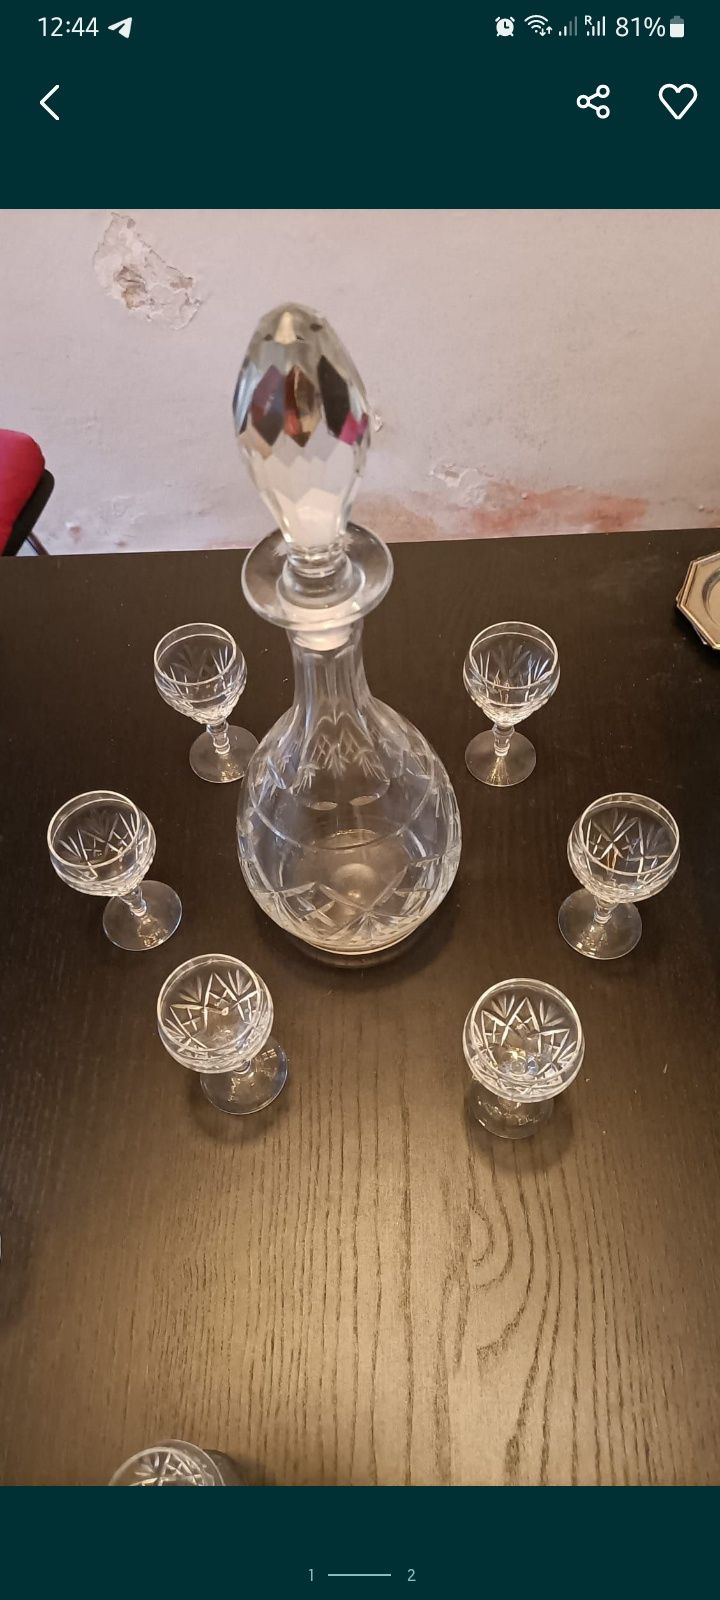 2 Vintage cristal glass and decanter - FAÇA A SUA PROPOSTA